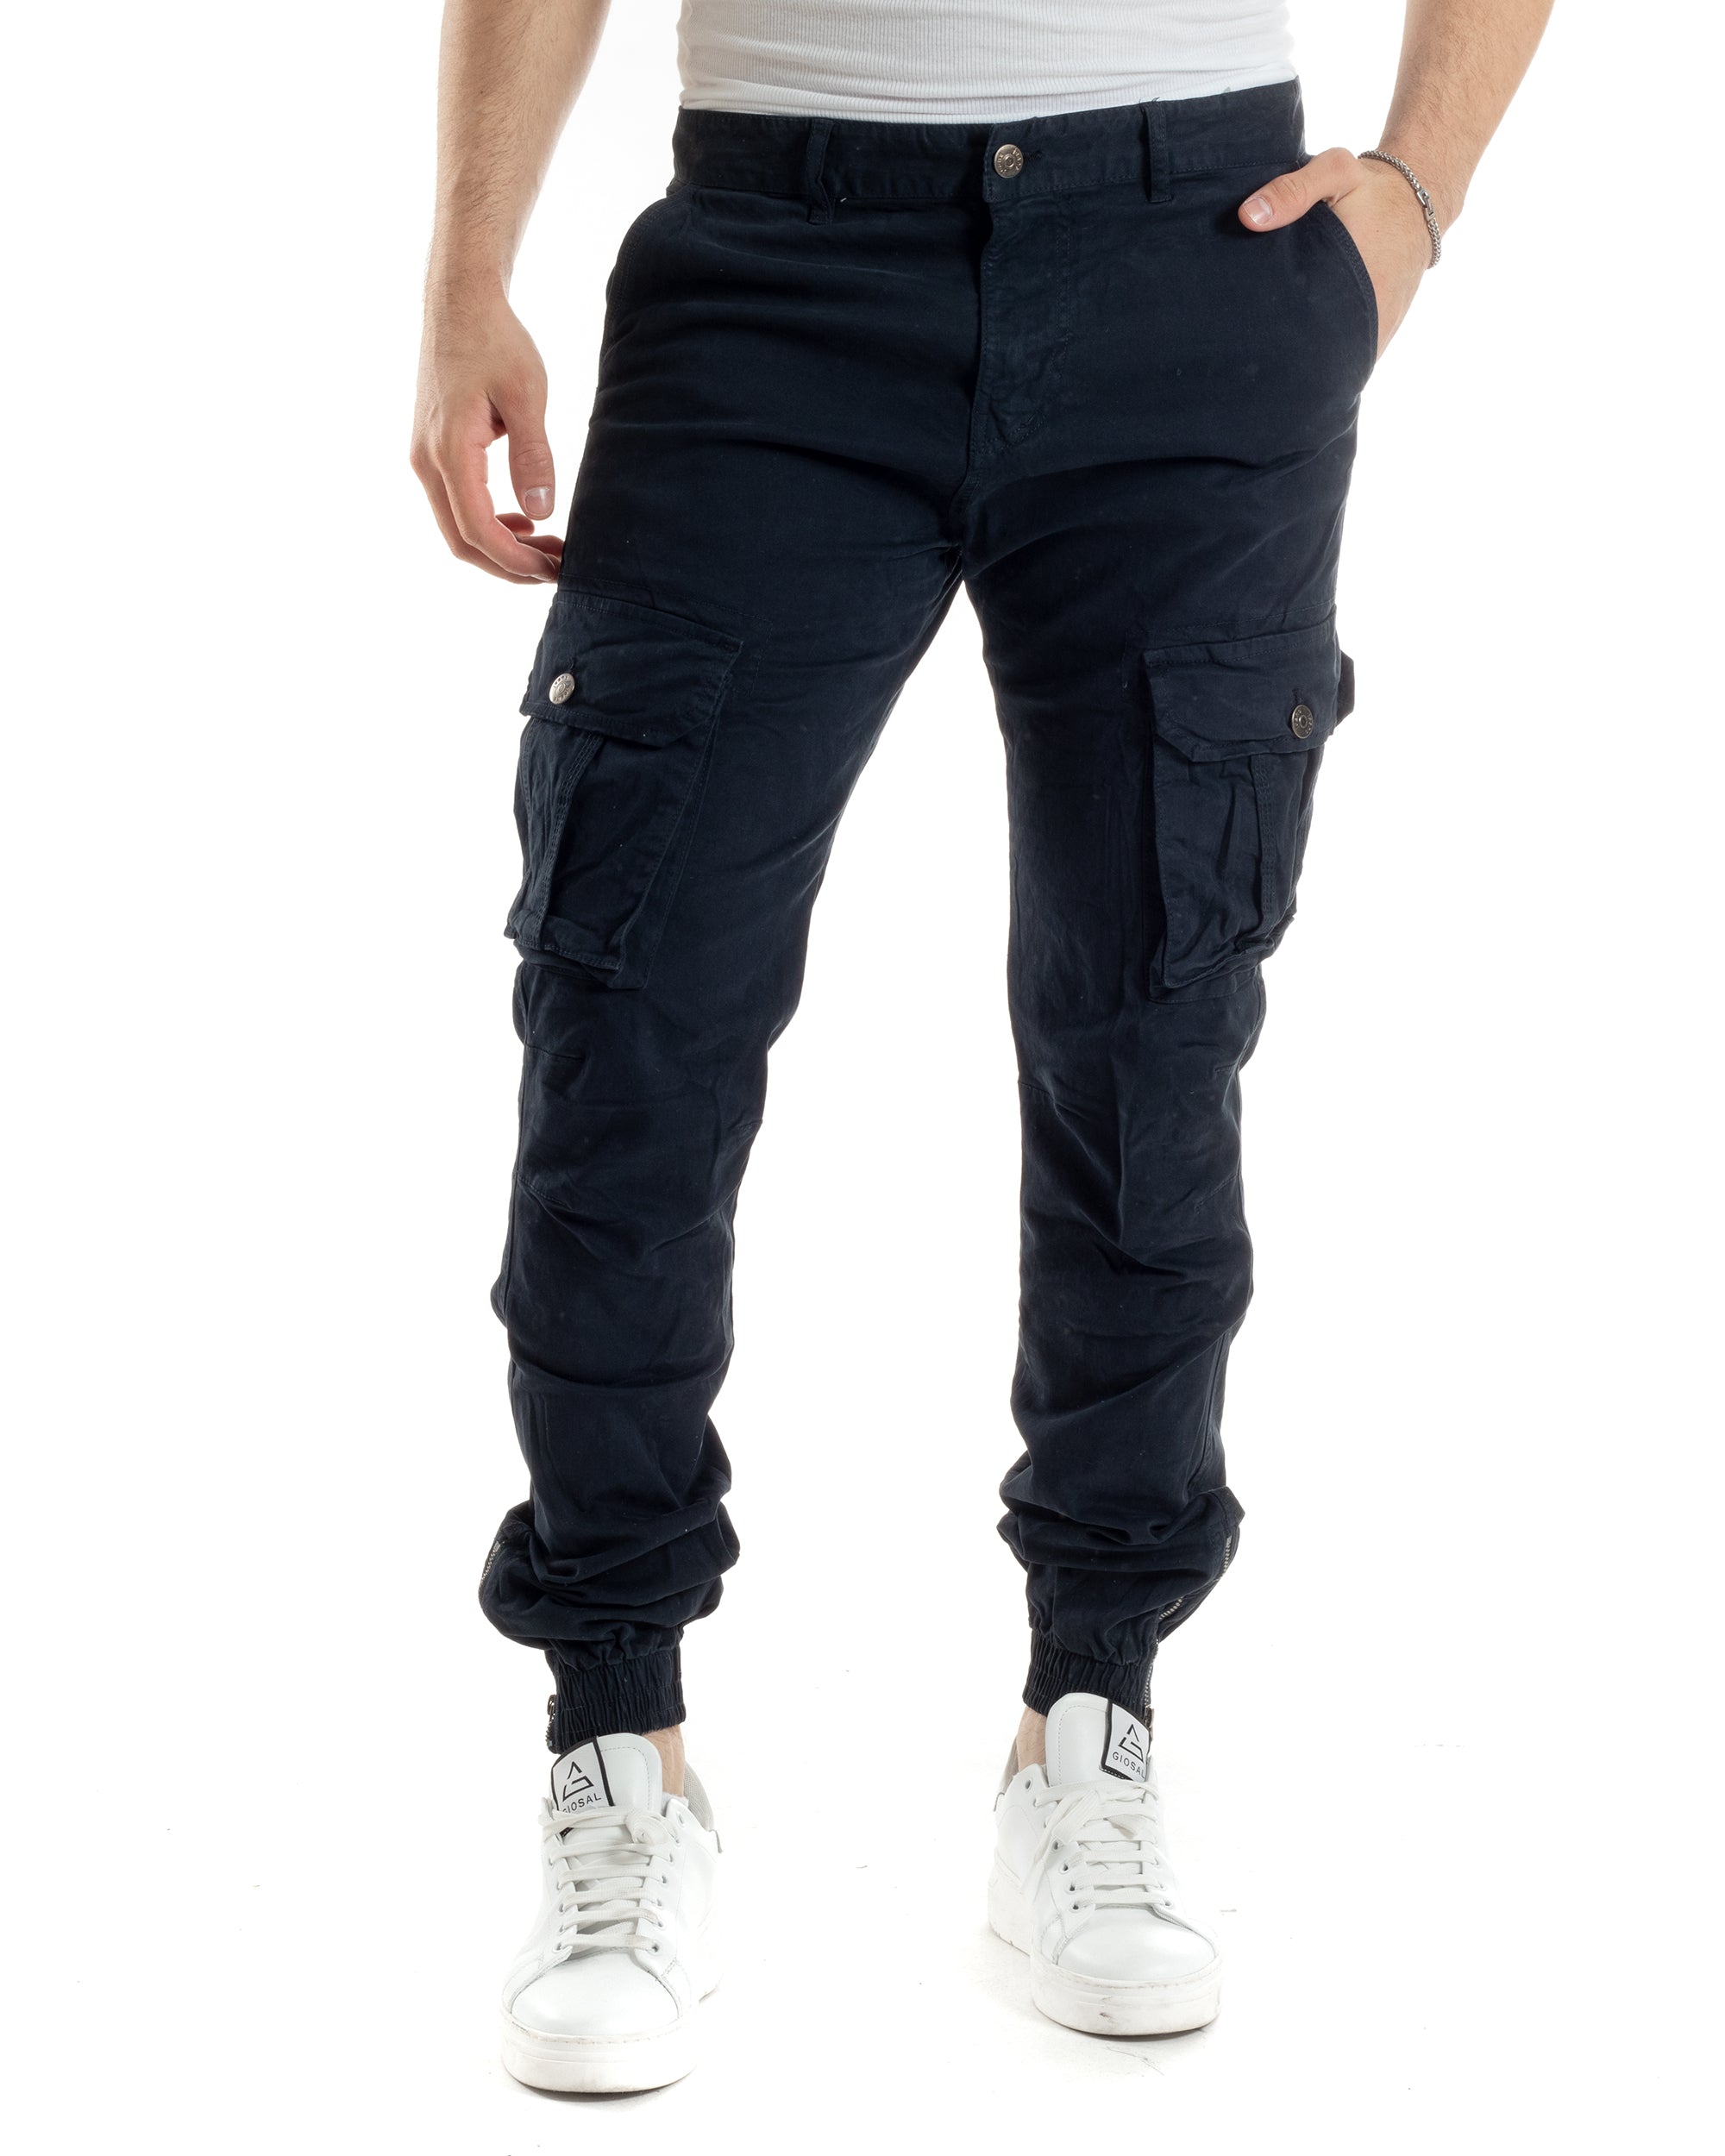 Pantaloni Uomo Cargo Cotone Regular Fit Con Tasconi E Zip Multitasche Elastico Al Fondo Casual Blu GIOSAL-P6056A